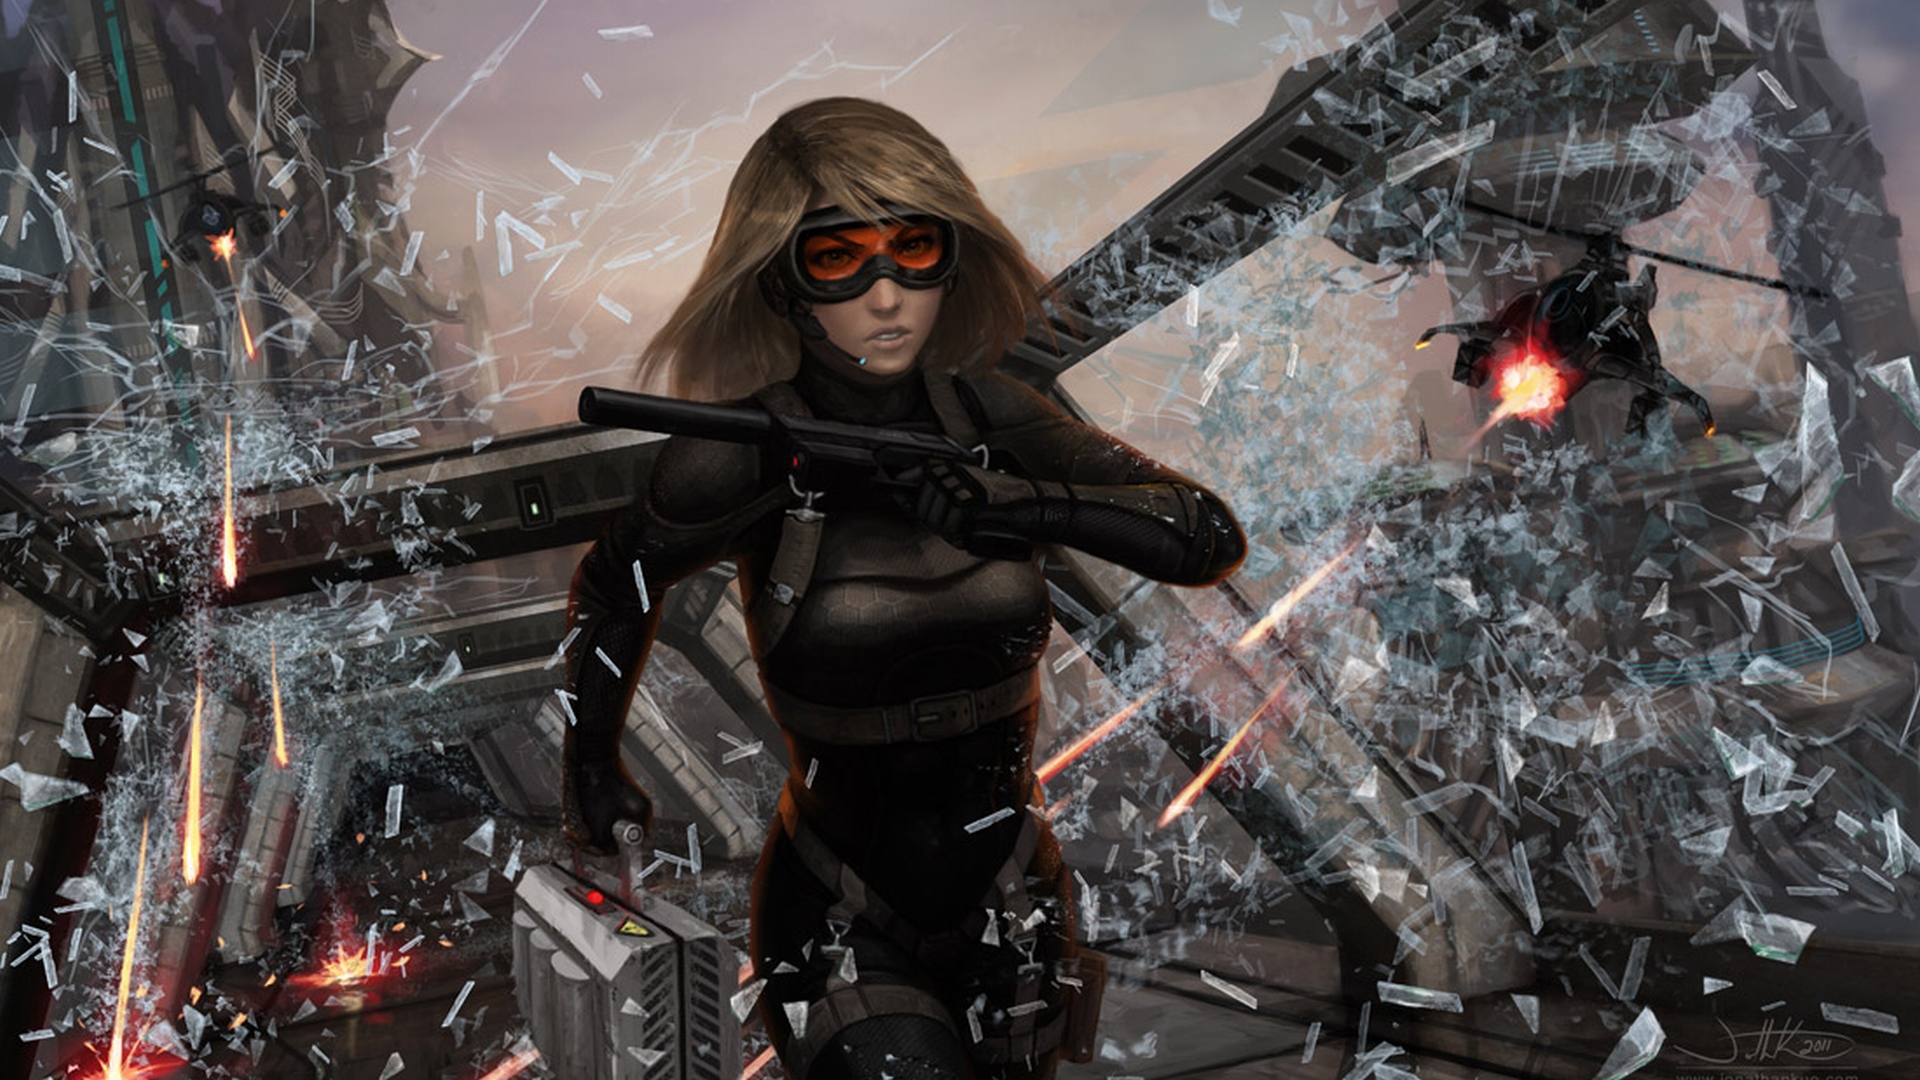 Sci Fi Women Warrior in a pistol-wielding bodysuit and goggles.